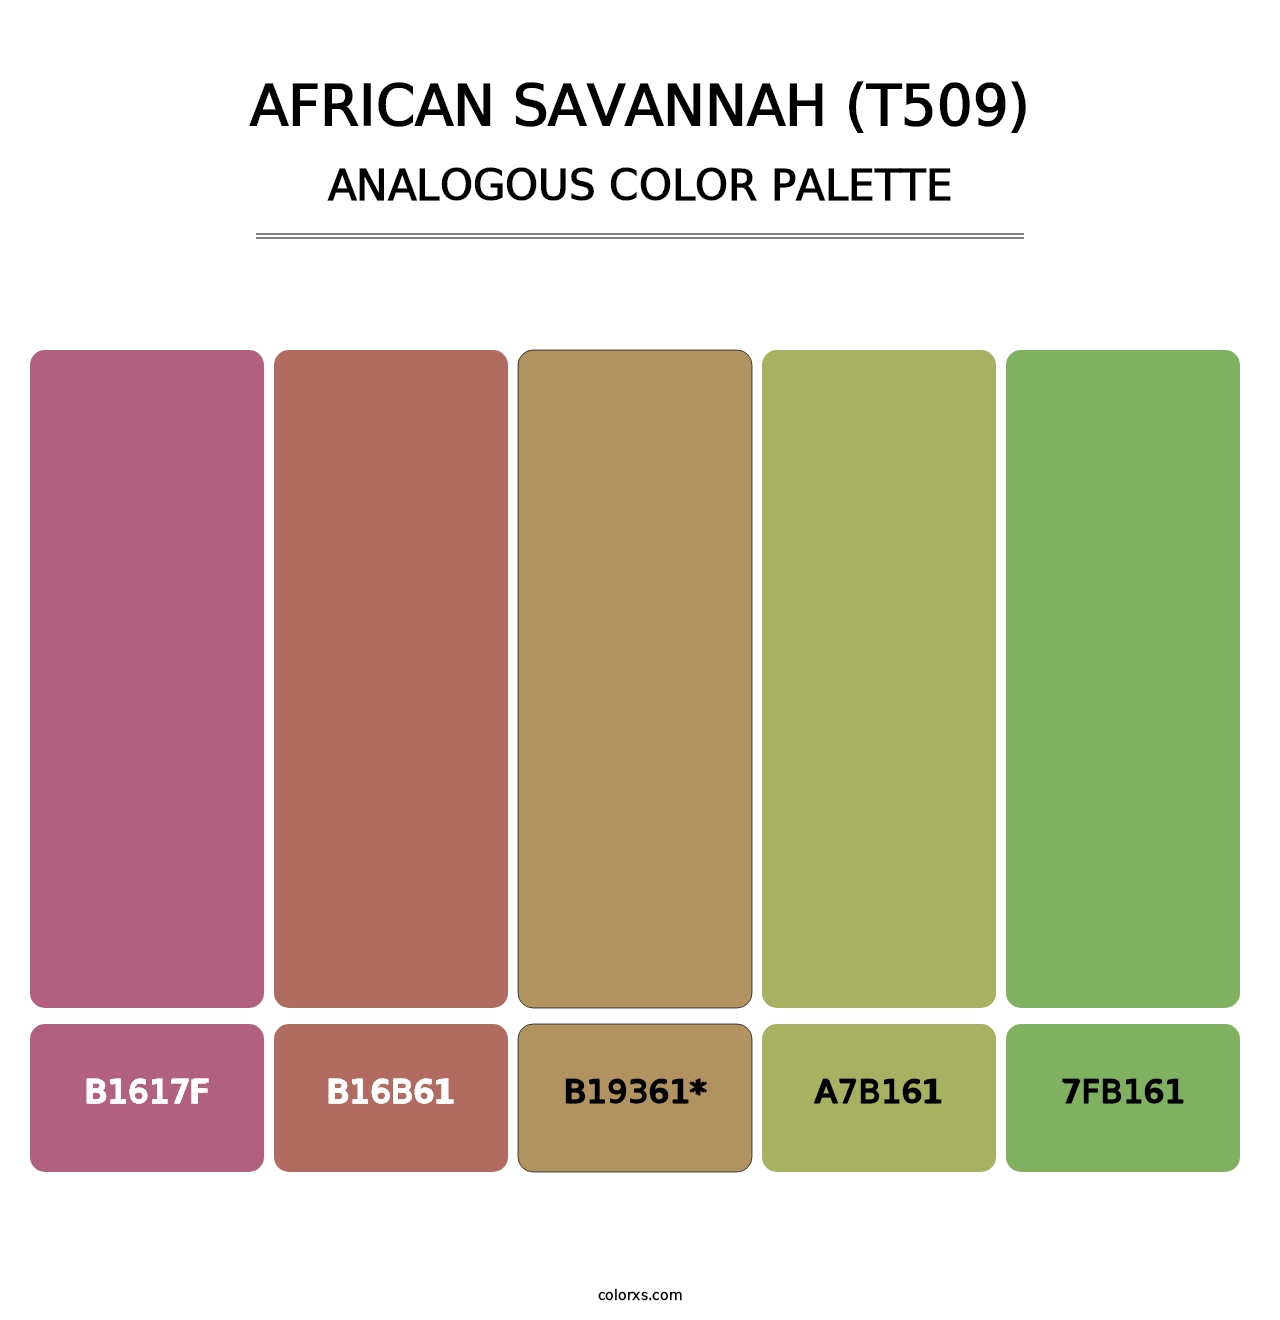 African Savannah (T509) - Analogous Color Palette